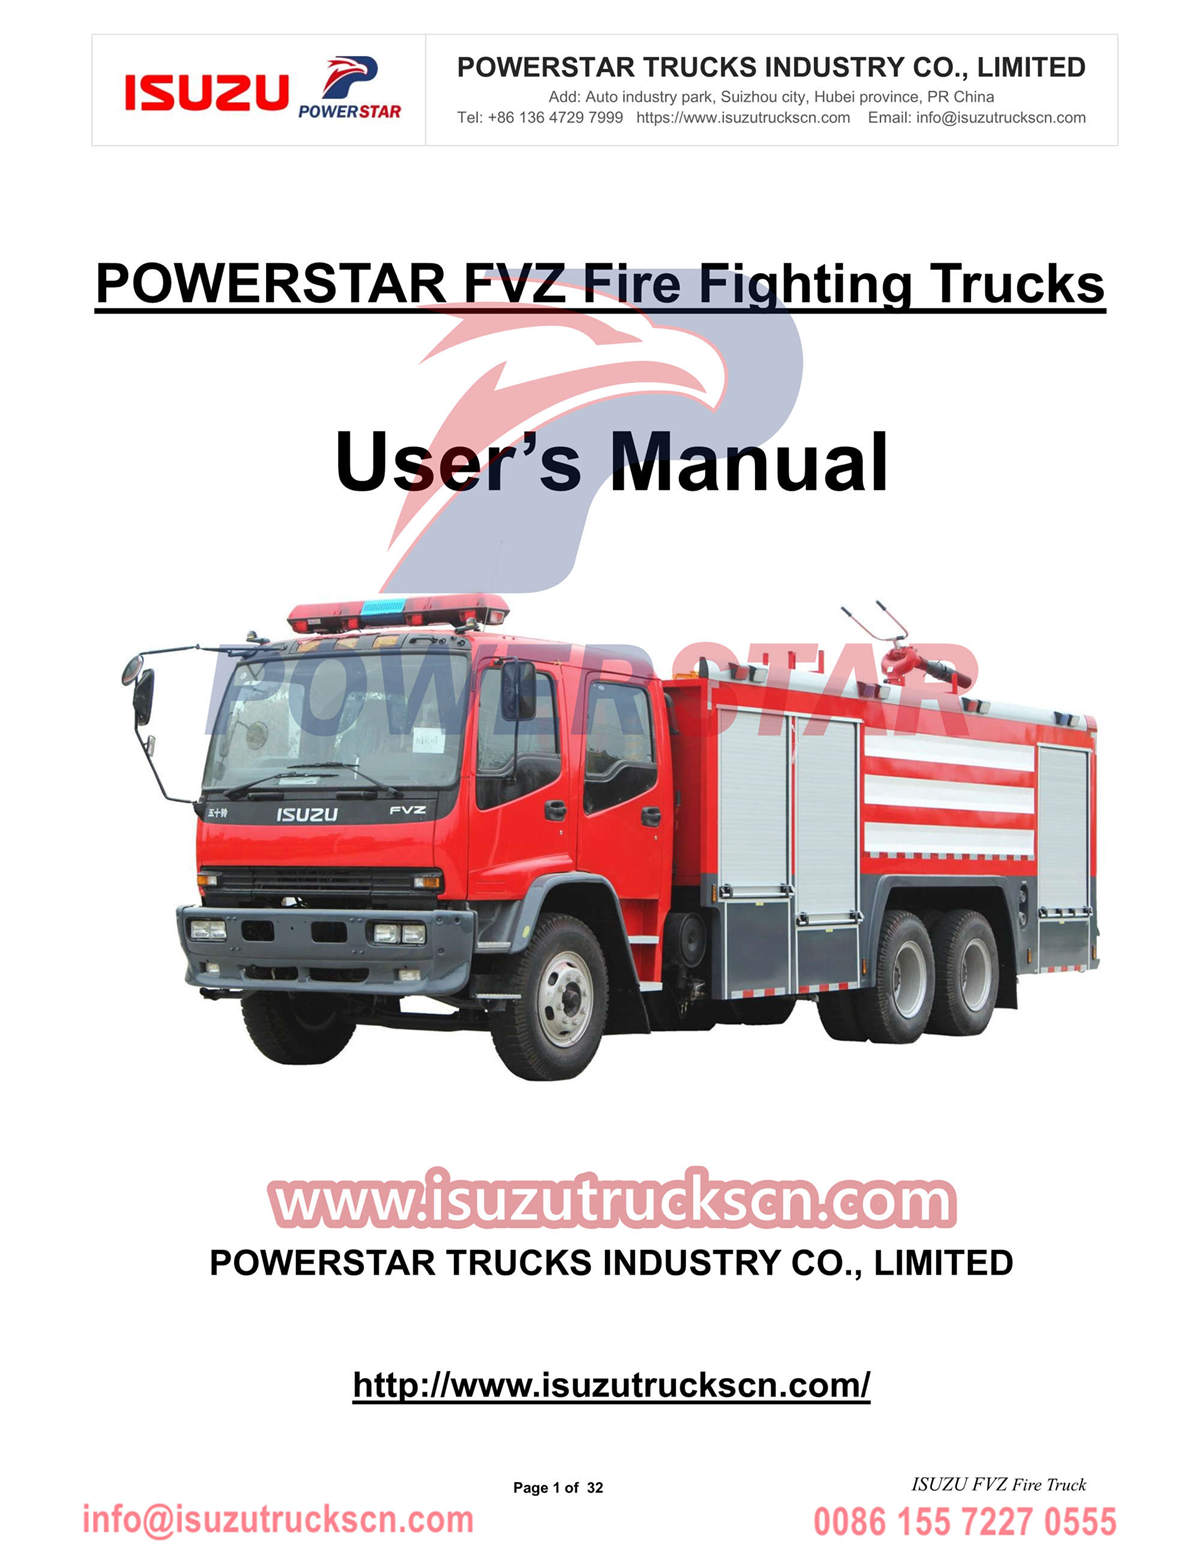 Exportation manuelle du manuel d'utilisation du camion de pompiers ISUZU vers la Gambie
        